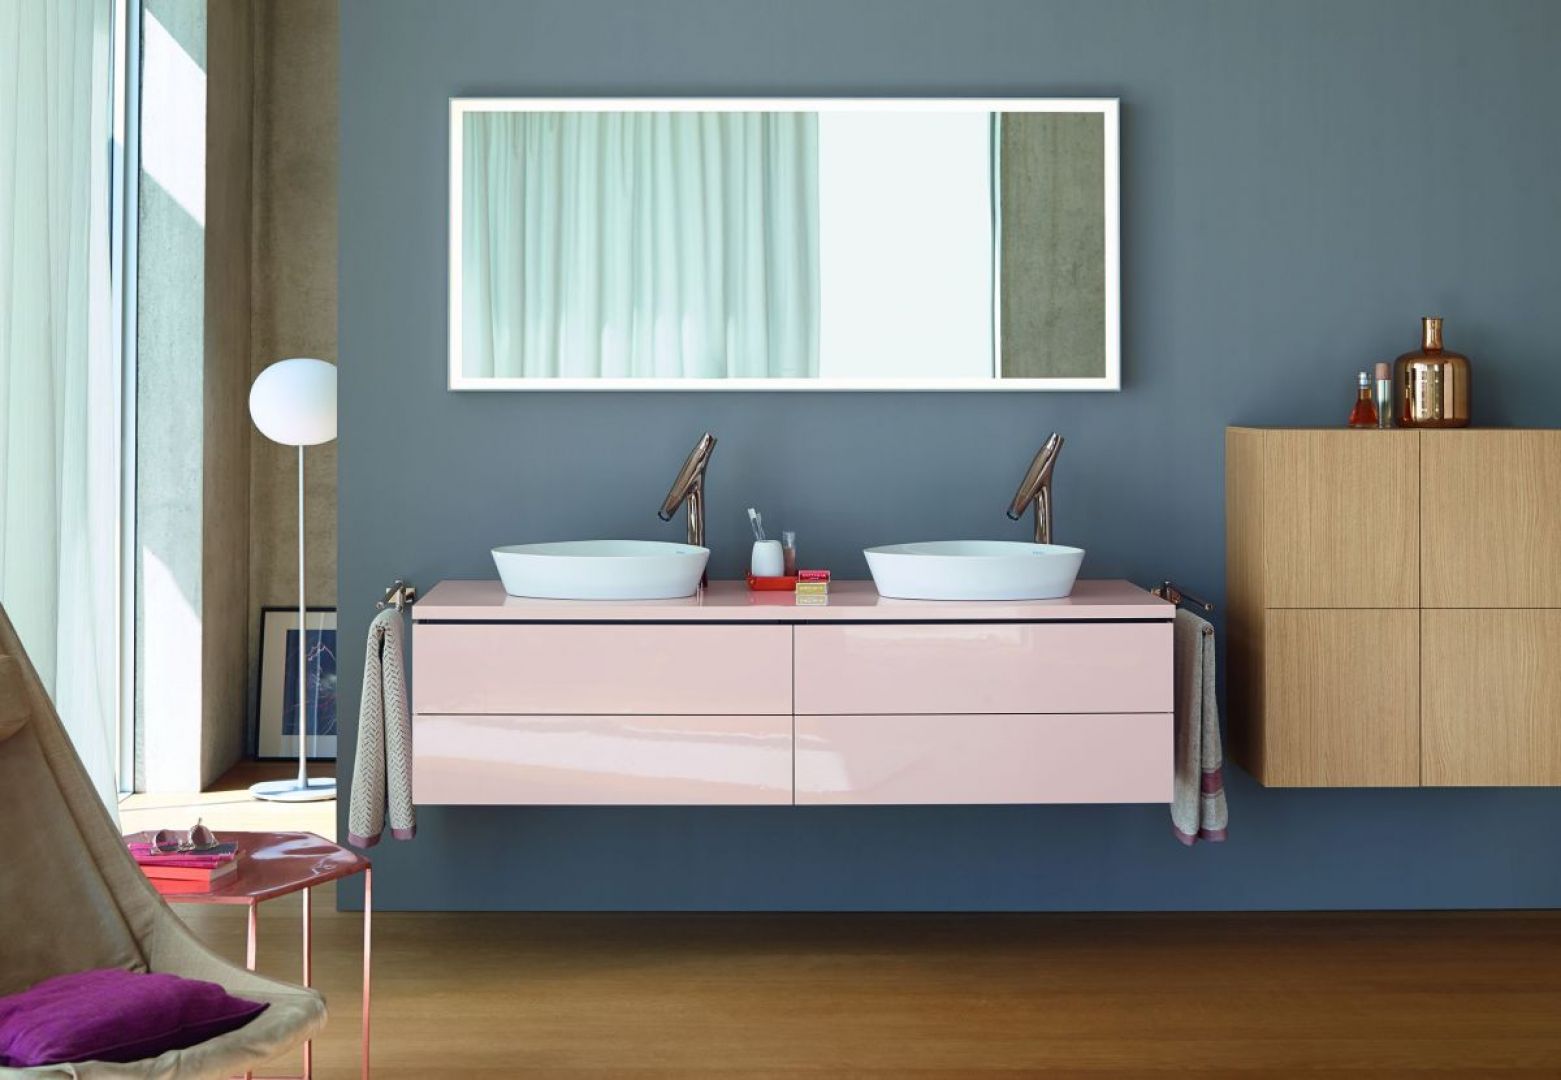 W nowoczesnej łazience często łączy się różnorodne materiały, np. białe fronty z frontami wykończonymi dekorami drewnopodobnymi. Fot. Duravit